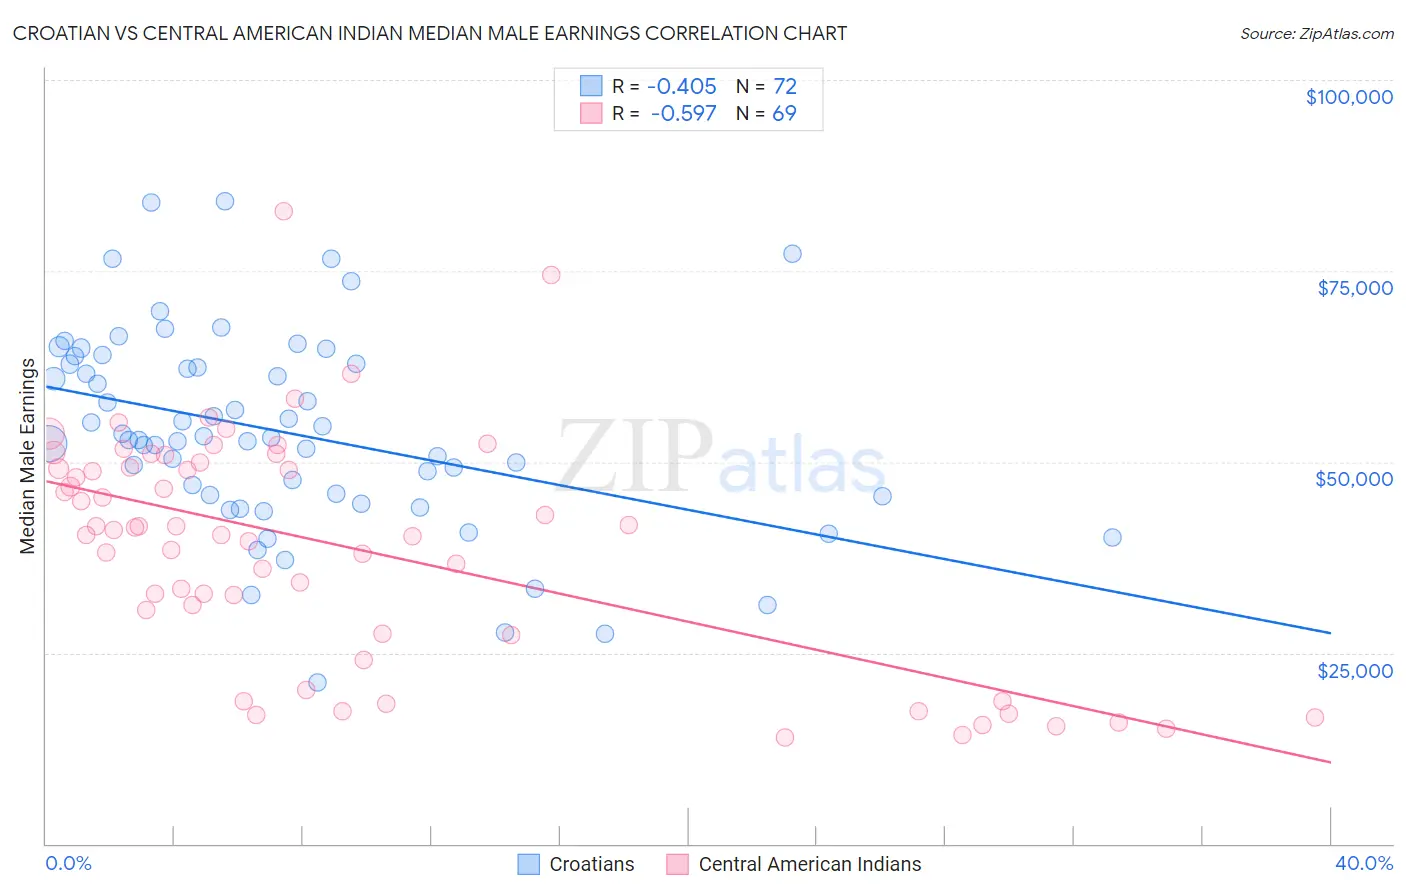 Croatian vs Central American Indian Median Male Earnings